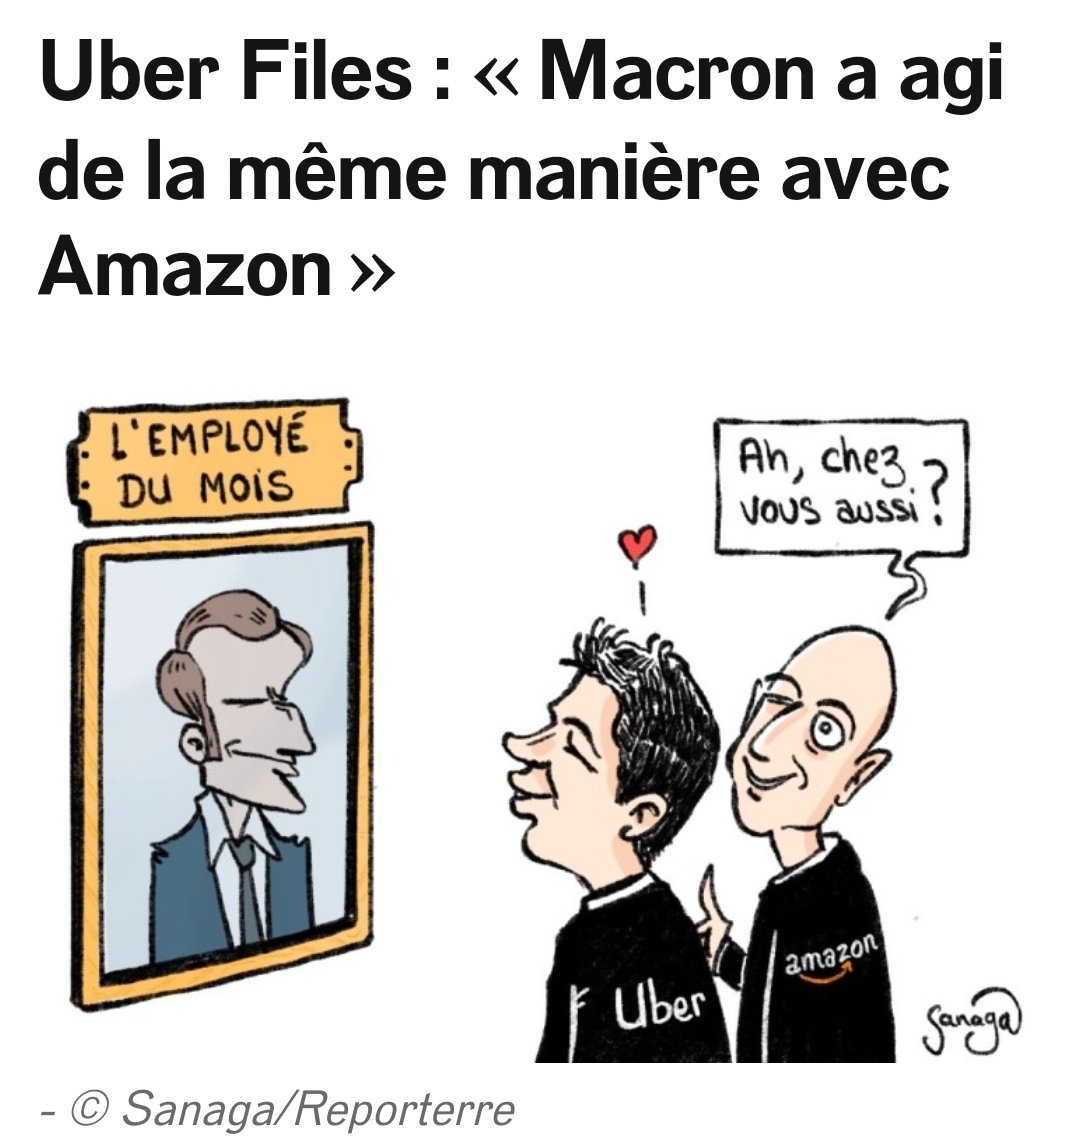 @RenaudTarlet En même temps avec le leader suprême des macronistes...quelque part, ils bossent déjà pour #Amazon

#macron 'le meilleur employé de tous les mois'

#amazonFiles 
#UberFiles
#CorruptiondEtat

x.com/mediapart/stat…